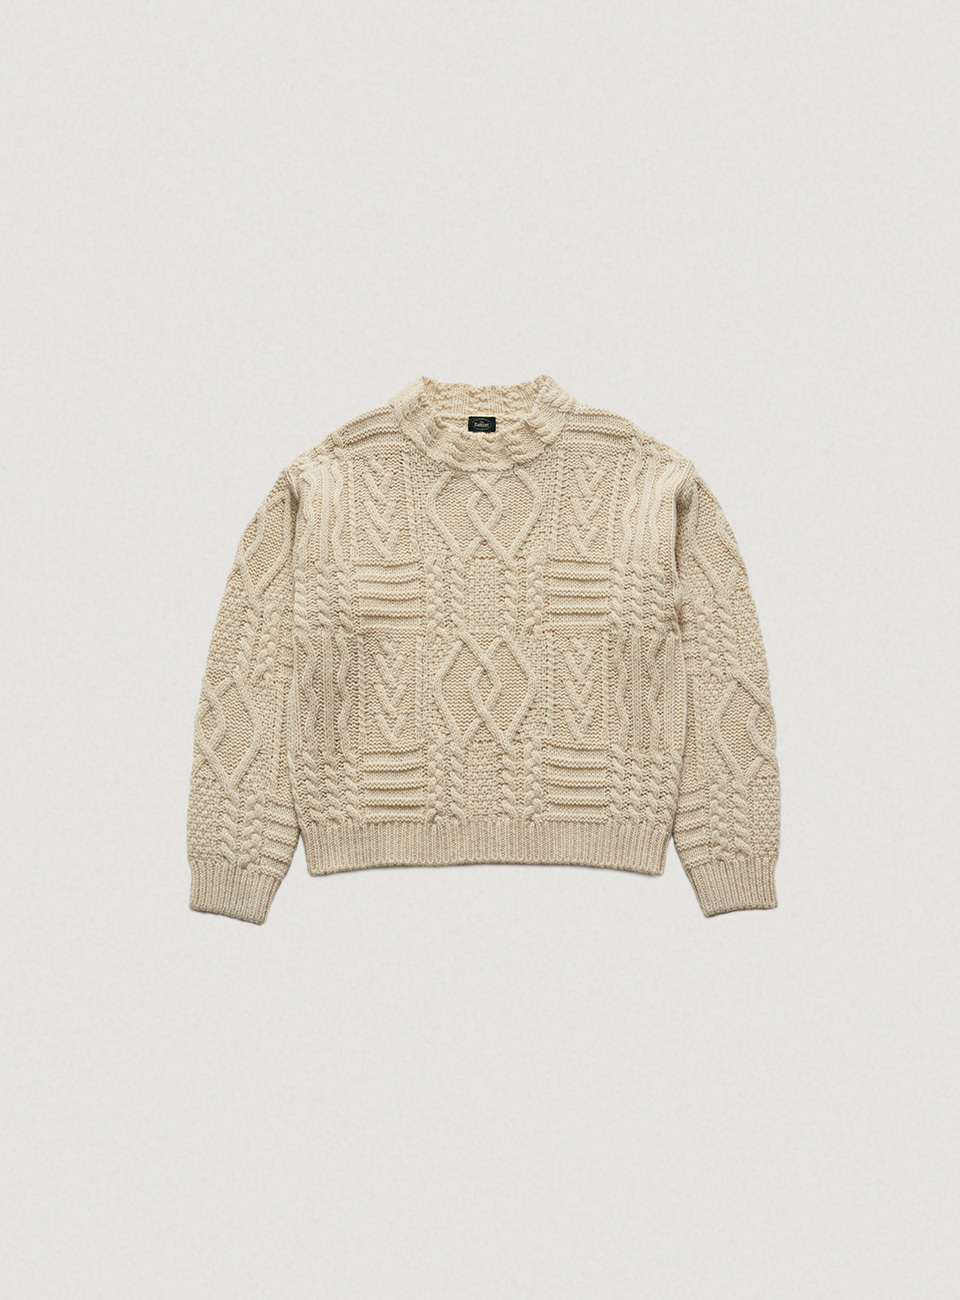 Ivory Fisherman Knit Sweater